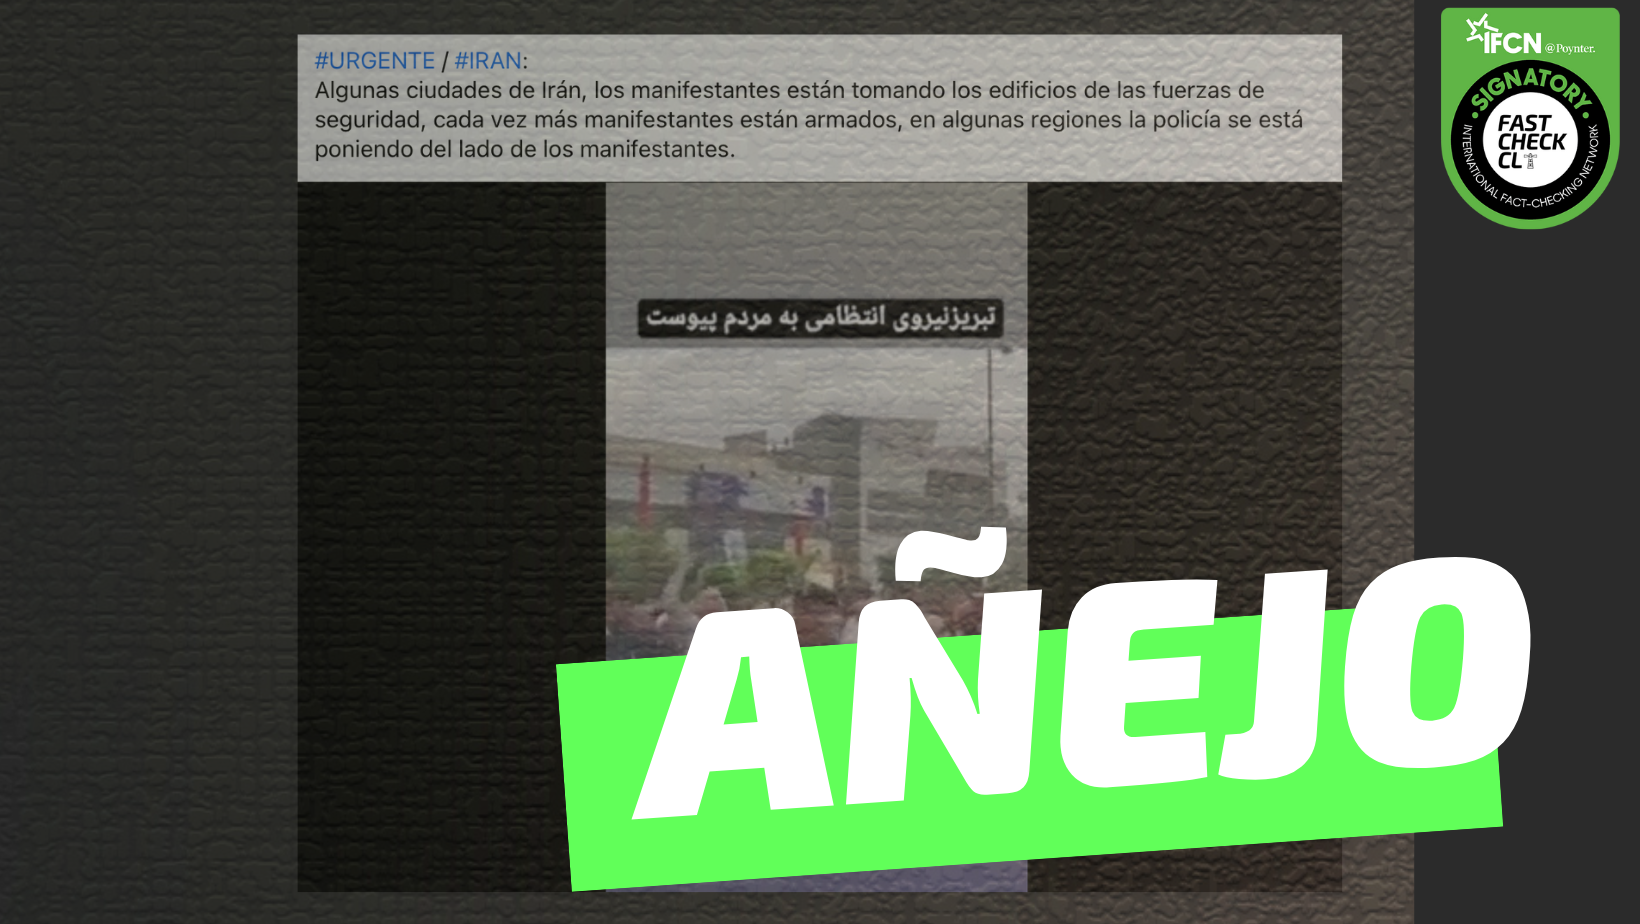 You are currently viewing Video de manifestantes en Irán tomándose los edificios de seguridad: #Añejo